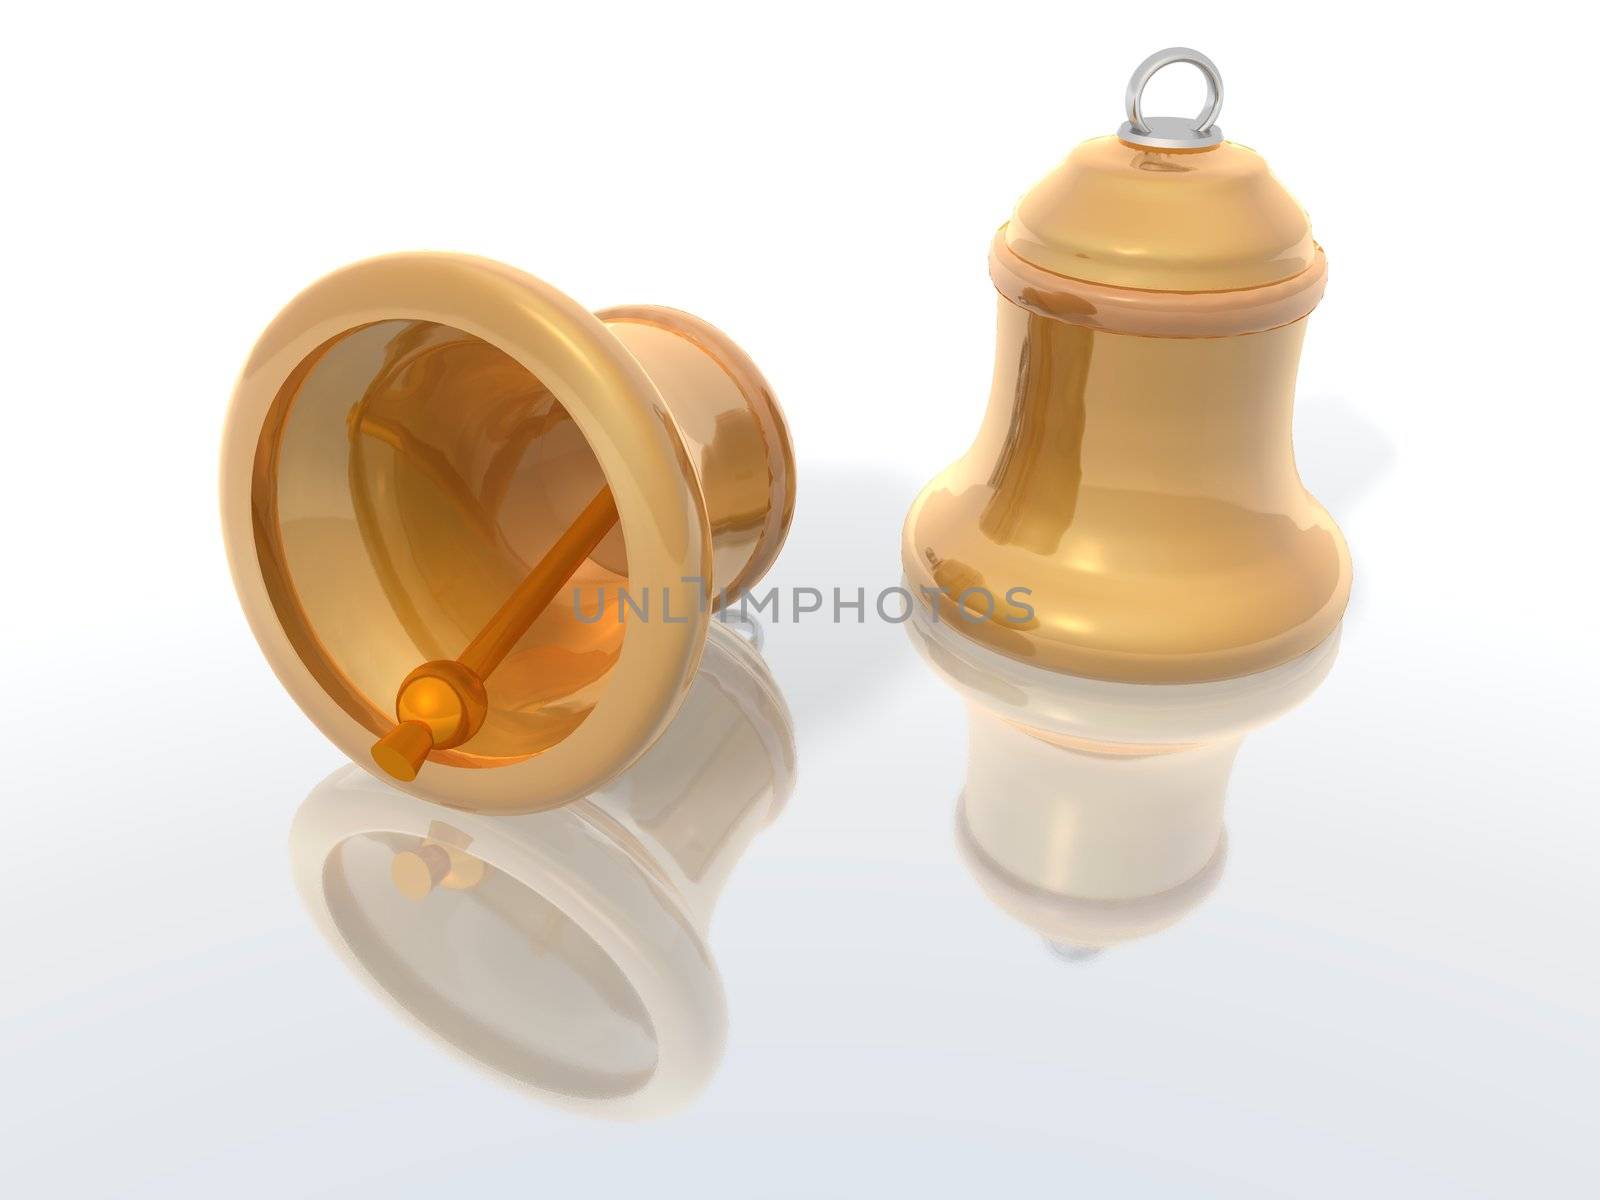 a 3D render of two golden bells